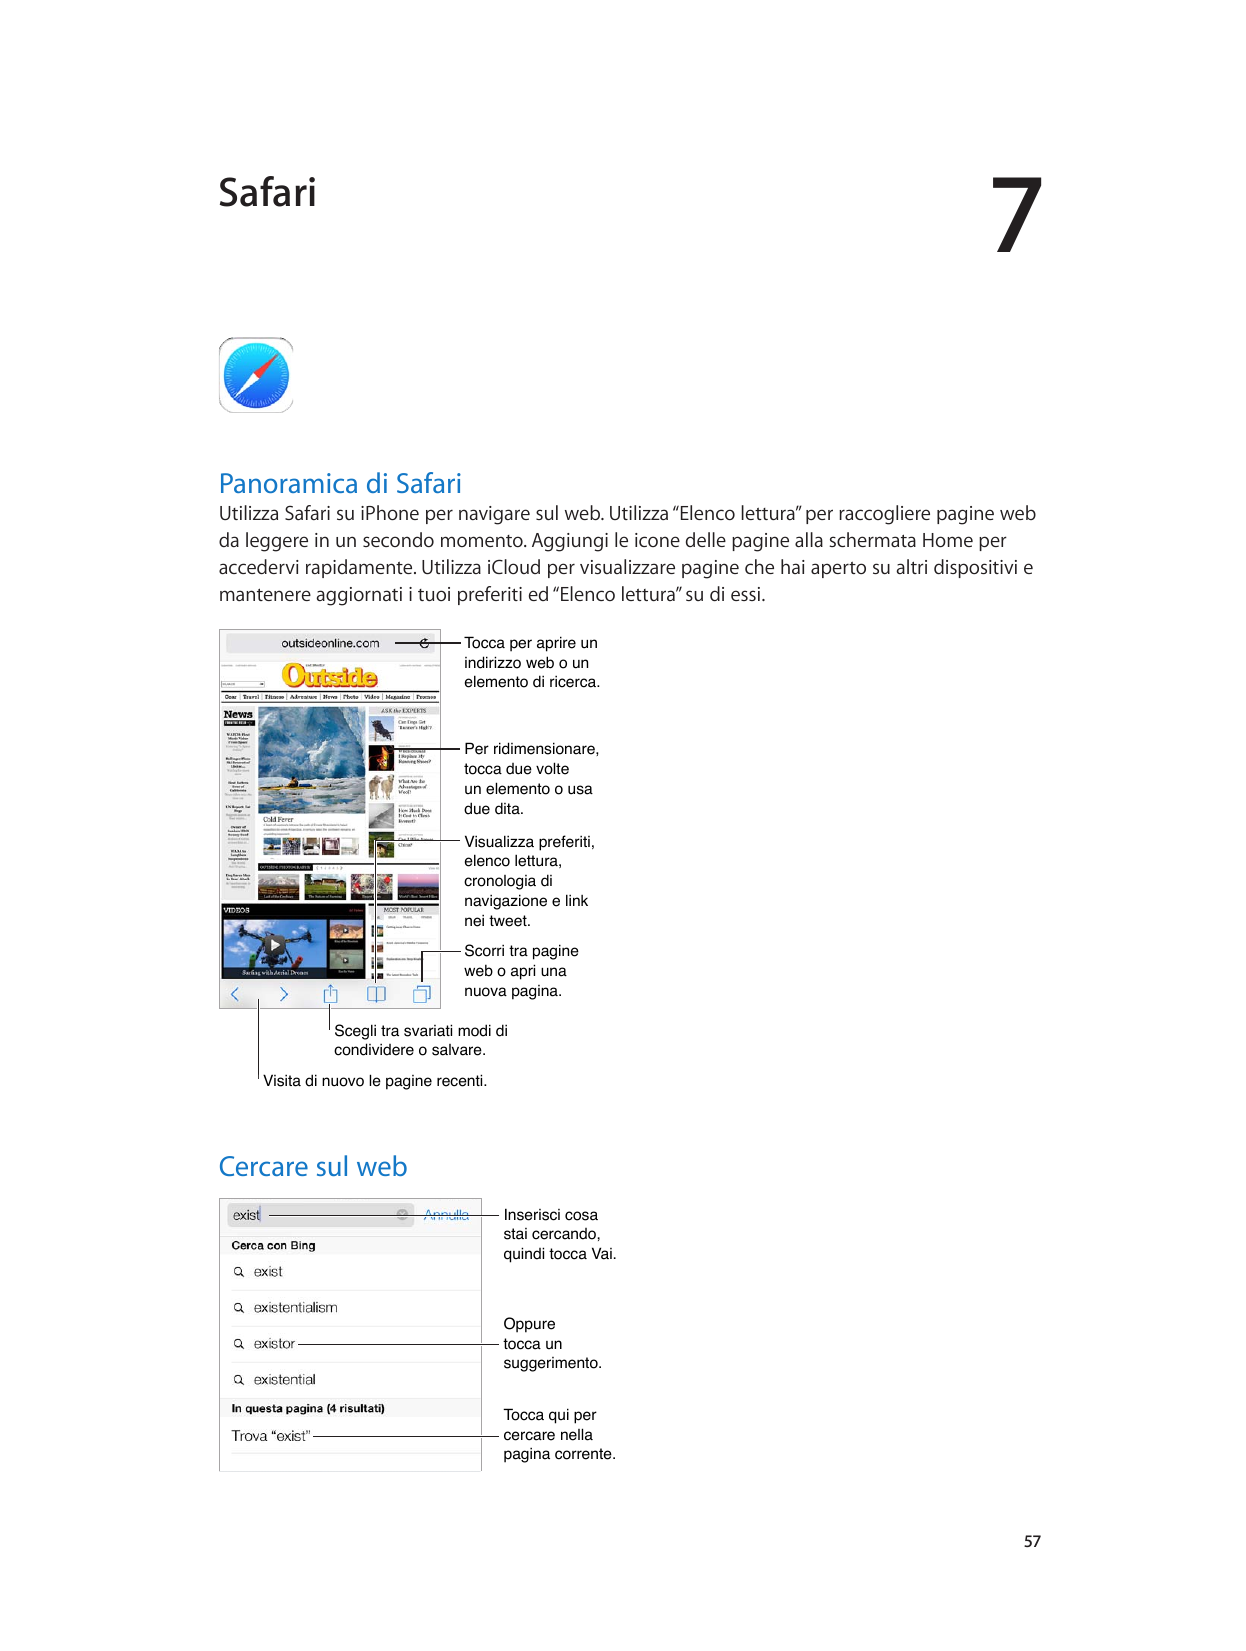 7SafariPanoramica di SafariUtilizza Safari su iPhone per navigare sul web. Utilizza “Elenco lettura” per raccogliere pagine webd